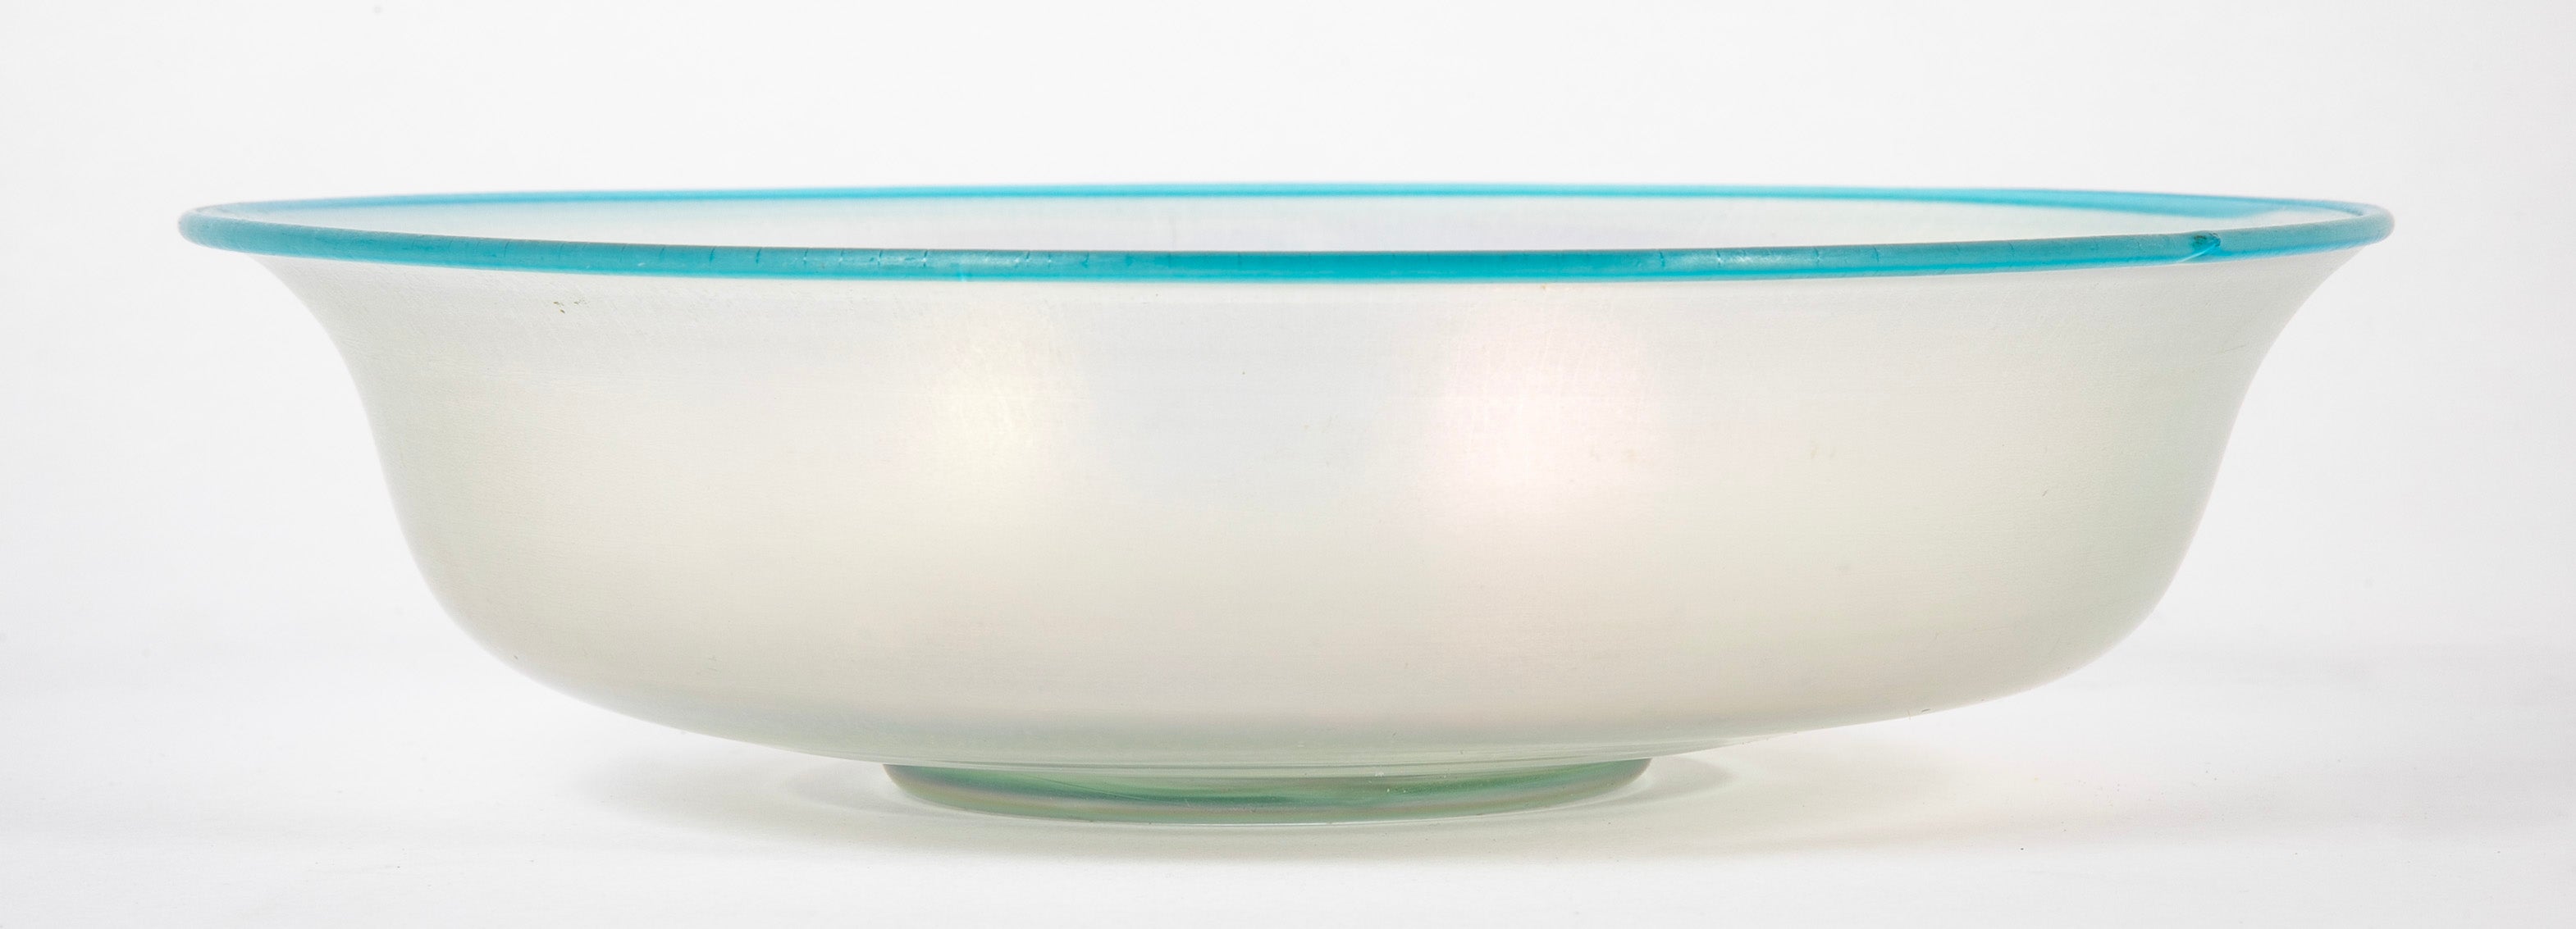 Steuben Verre de Soie Shallow Bowl with Turquoise Rim